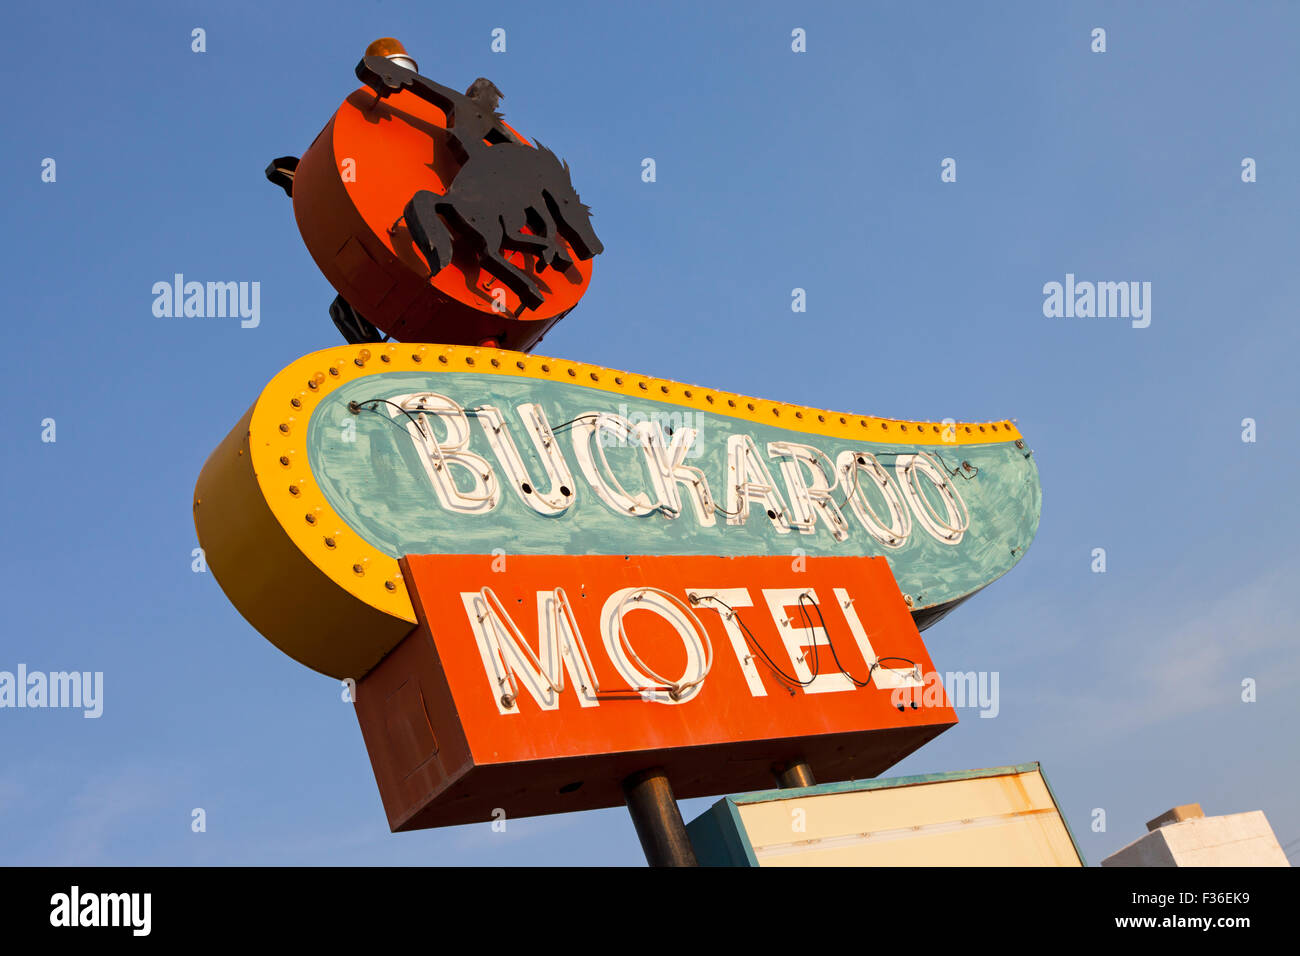 The Buckaroo Motel along Route 66 in Tucumcari, New Mexico. Stock Photo